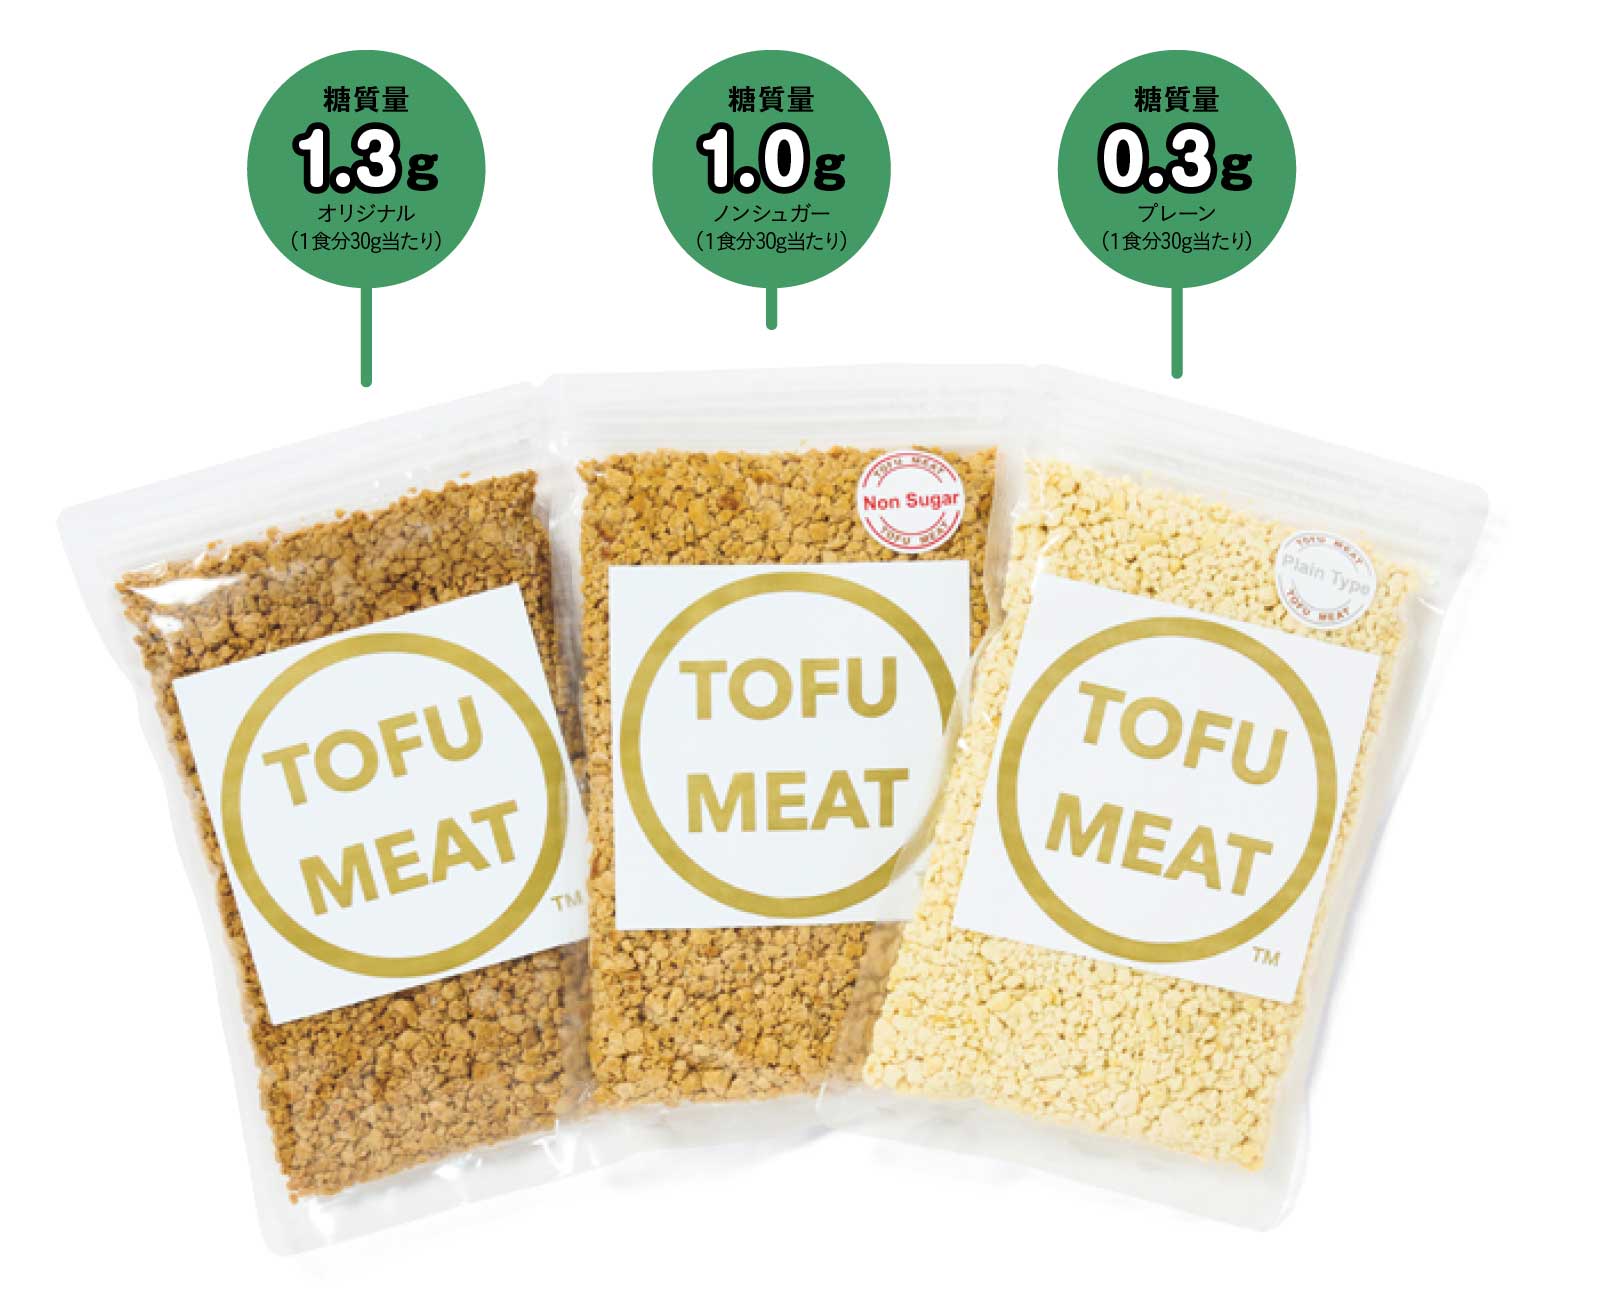 TOFU MEATの3種詰め合わせ　糖質量：1.3g（オリジナル・1食分30g当たり）、1.0g（ノンシュガー・1食分30g当たり）、0.3g（プレーン・1食分30g当たり）